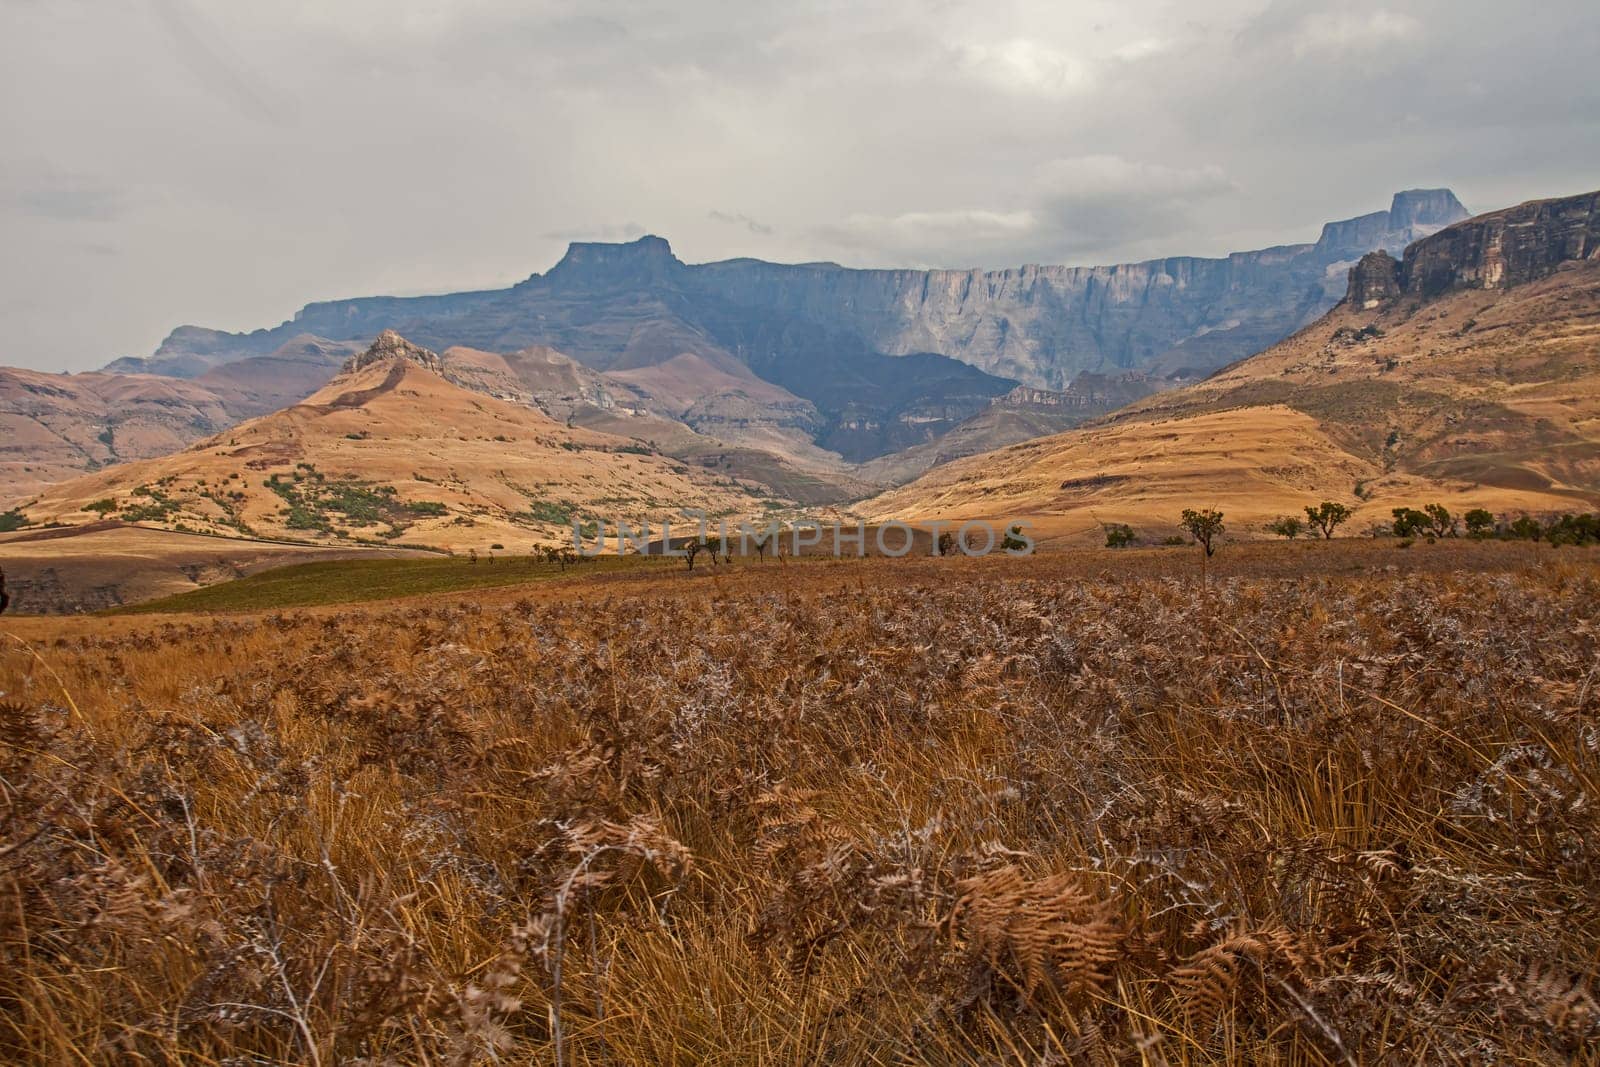 Drakensberg Mountain scene 15593 by kobus_peche